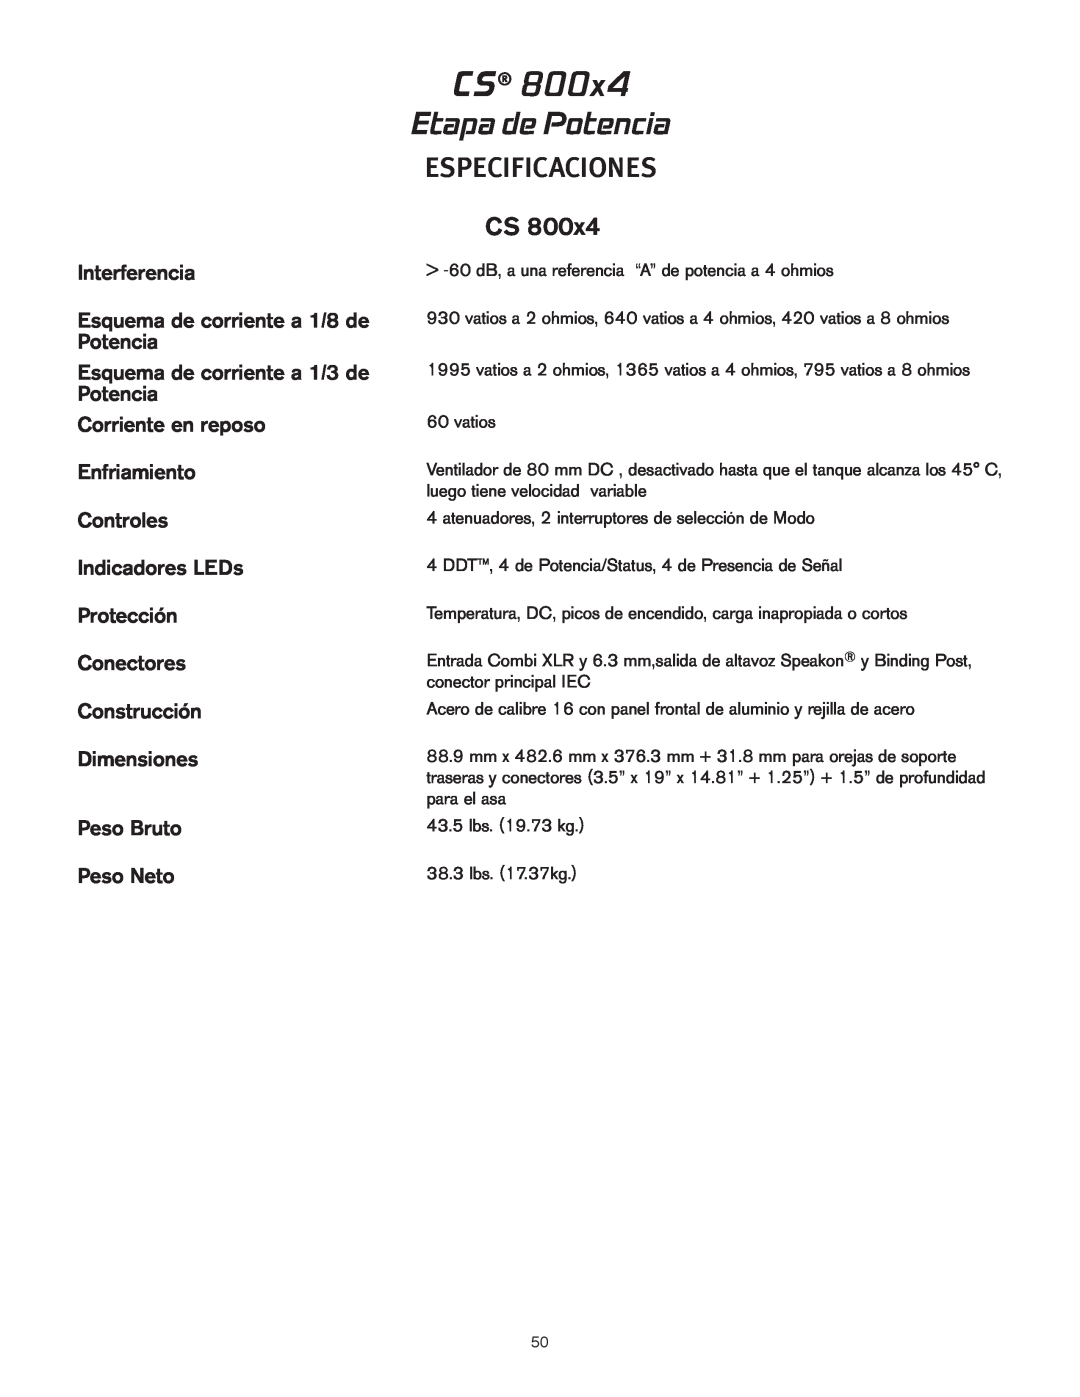 Peavey CS 800x4 owner manual Etapa de Potencia, Especificaciones, Interferencia, Esquema de corriente a 1/8 de Potencia 